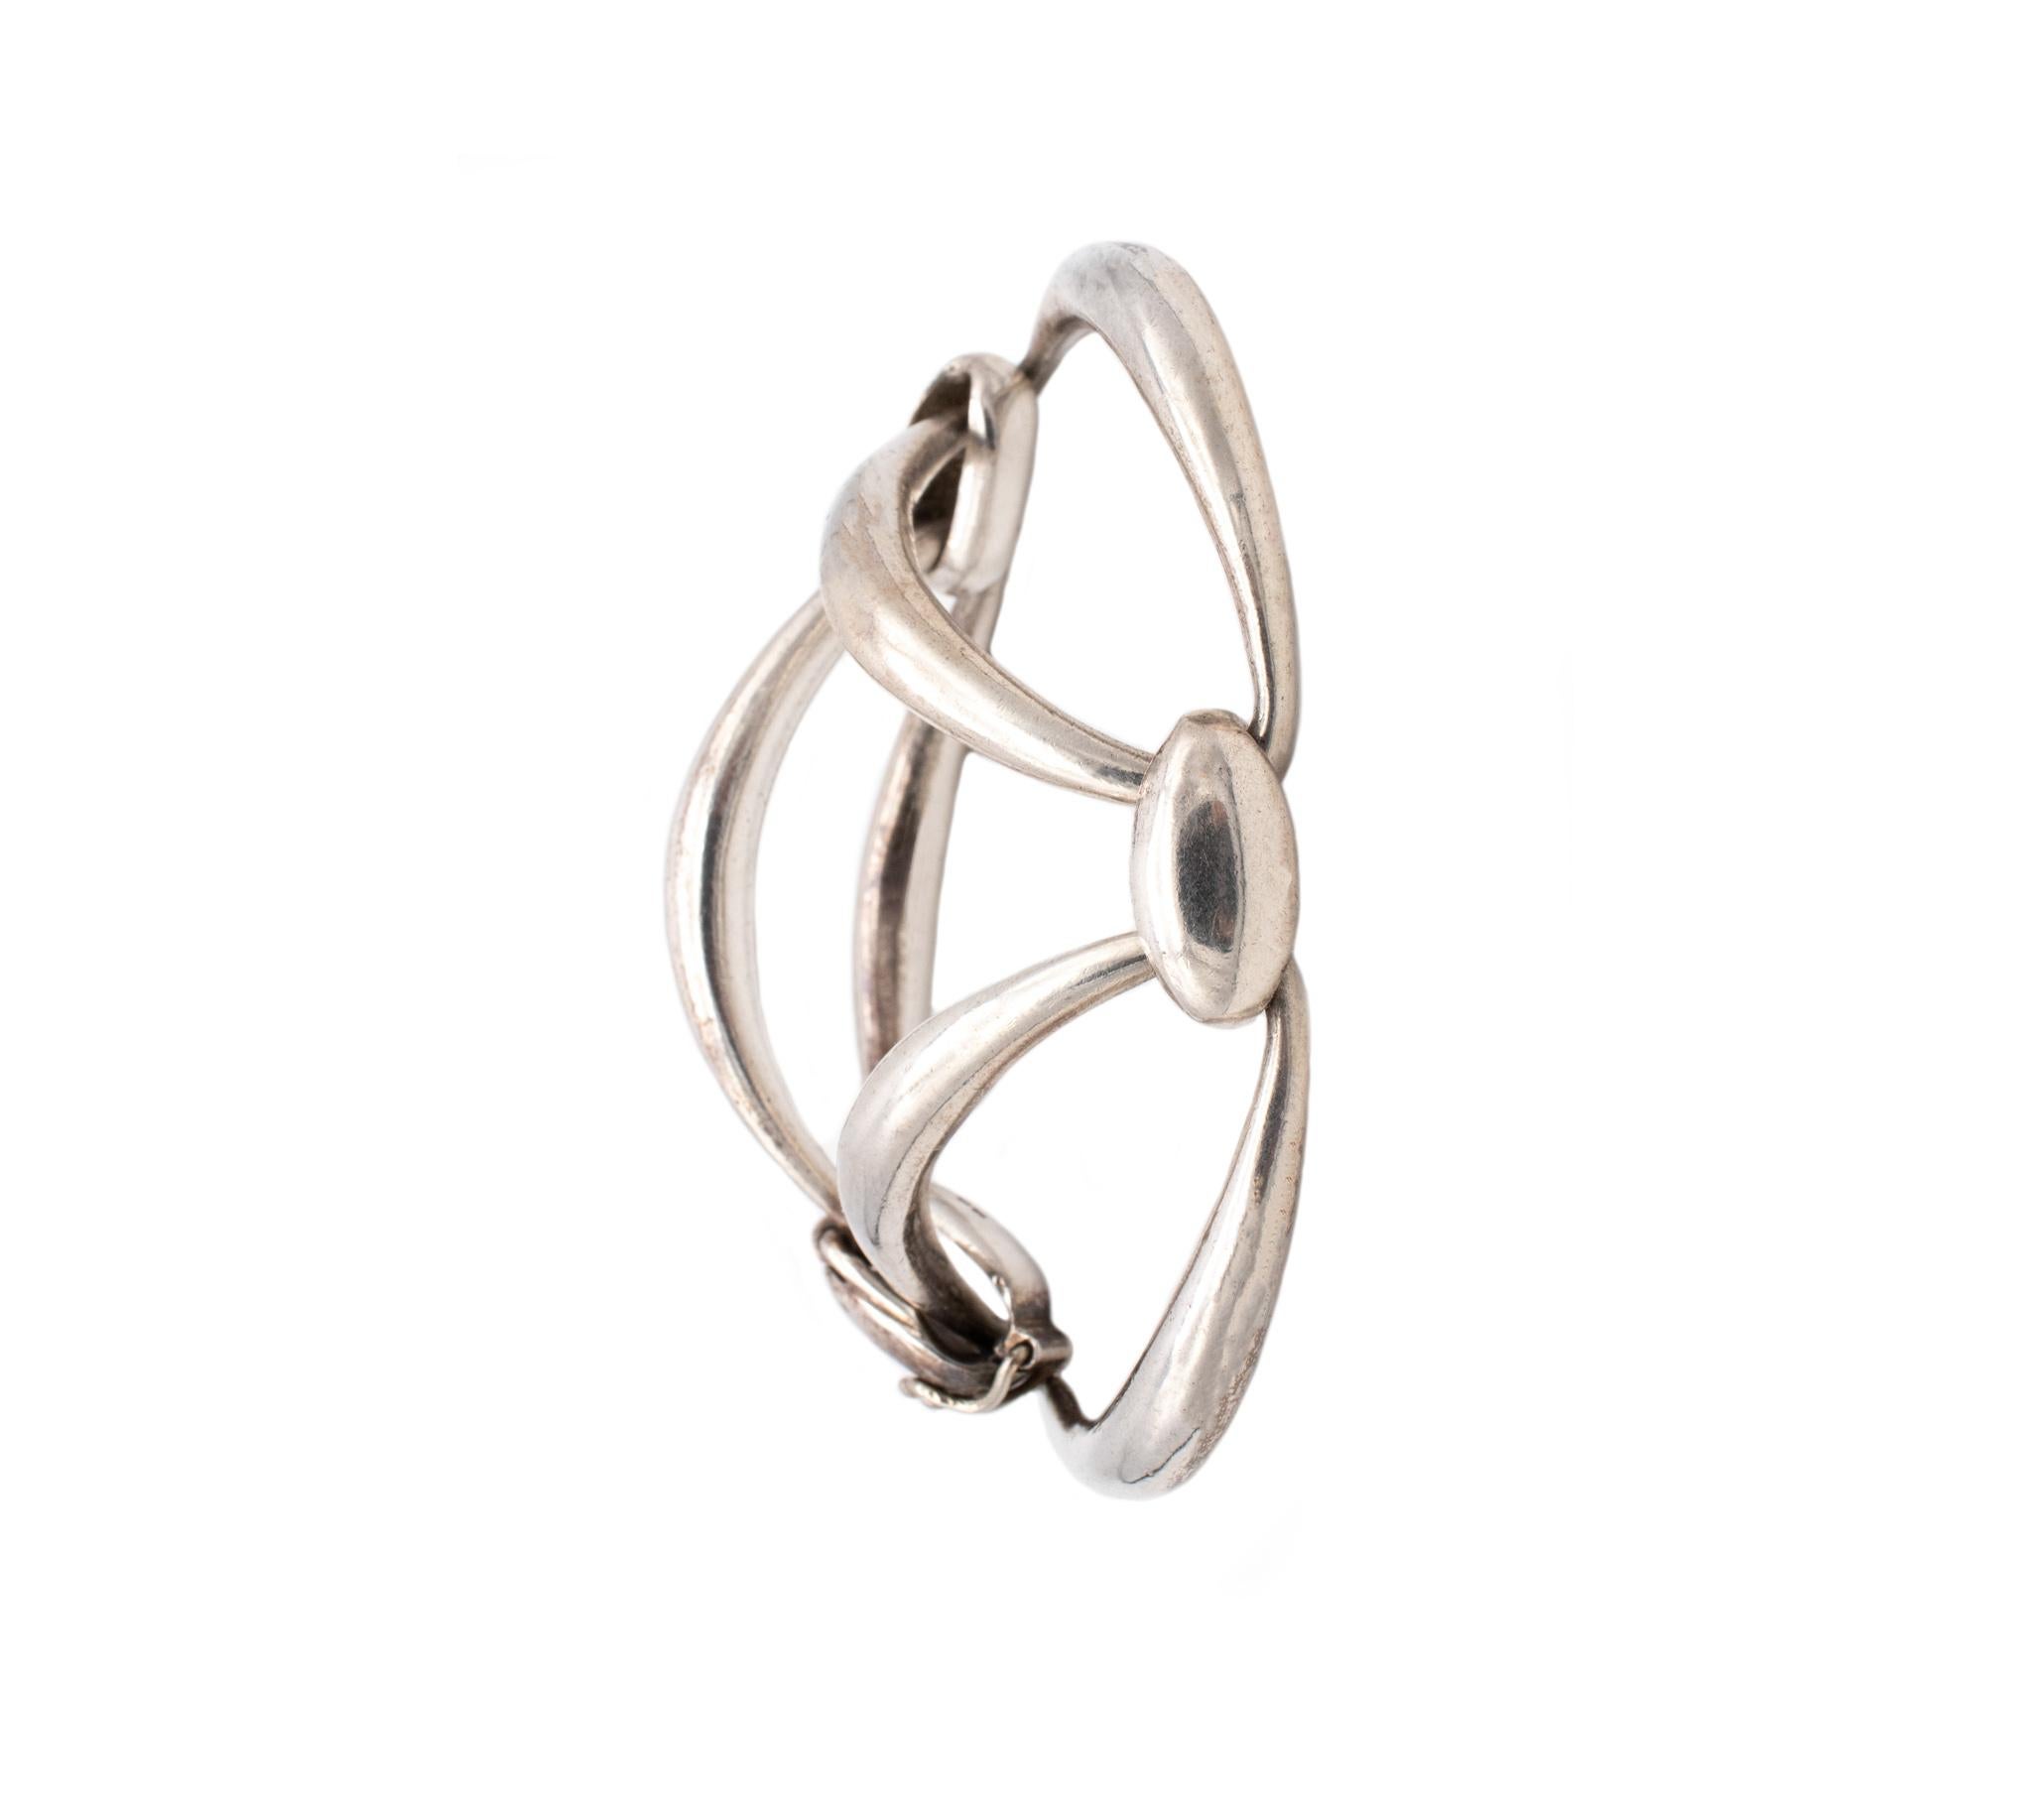 Bracelet extrêmement rare conçu par Van Cleef & Arpels.

Elegant bracelet moderniste, créé par la maison Van Cleef & Arpels à Paris, France, au début des années 1970. Ce design rare et audacieux est composé de trois éléments géométriques semi-ovales